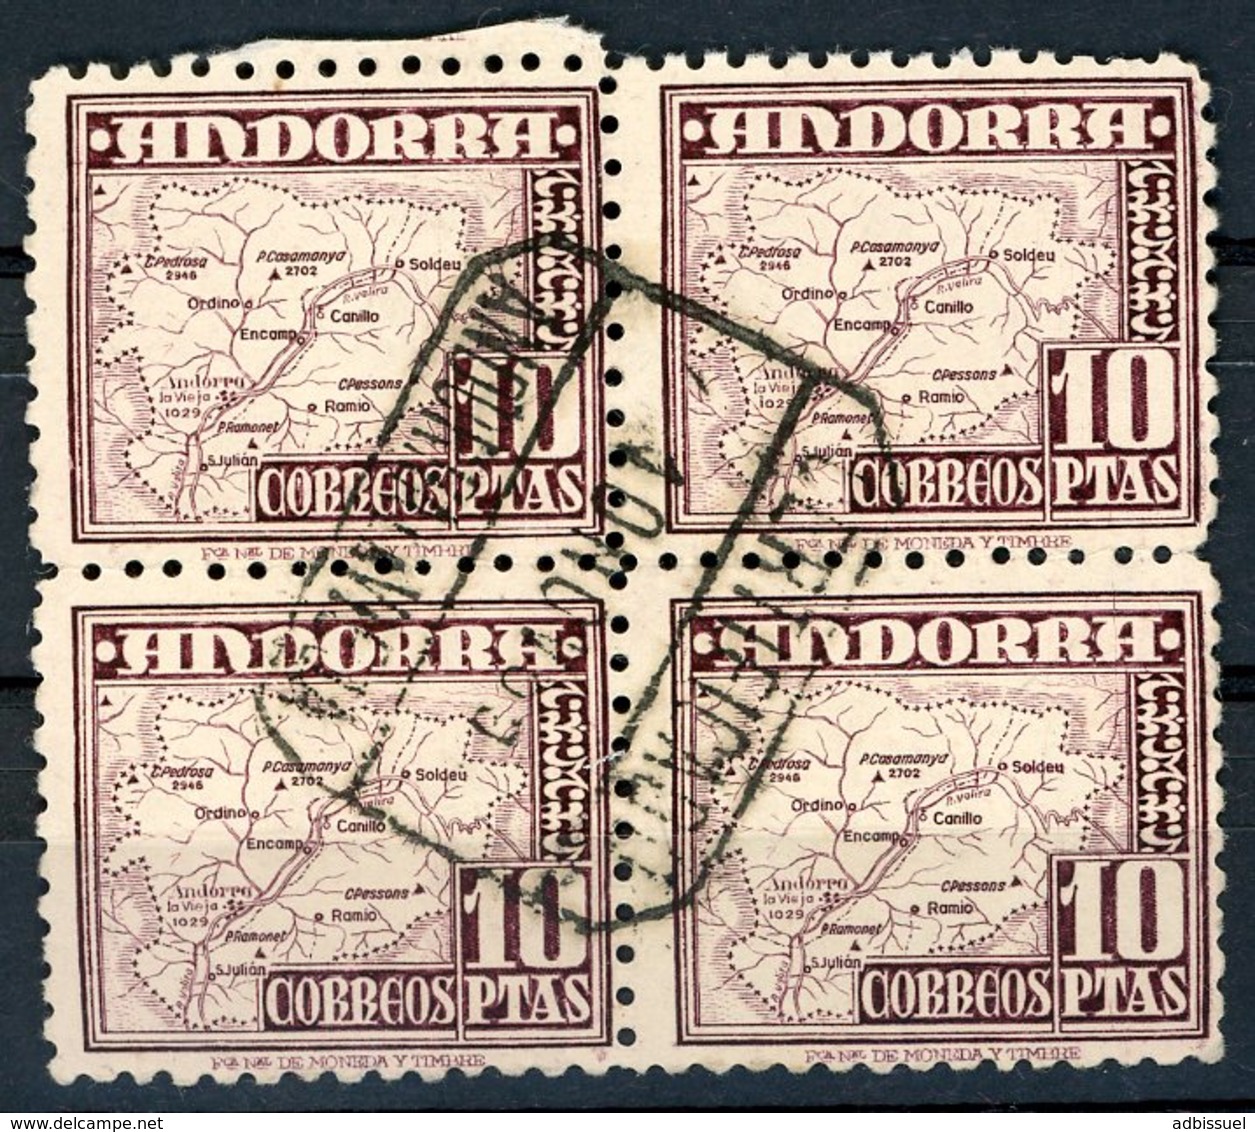 Andorra N° 51. Raro Bloque Se-tenant De 4 Sellos Con Matasellos Certificado (Bloc De 4 Rare Avec Cachet Recommandé). - Used Stamps